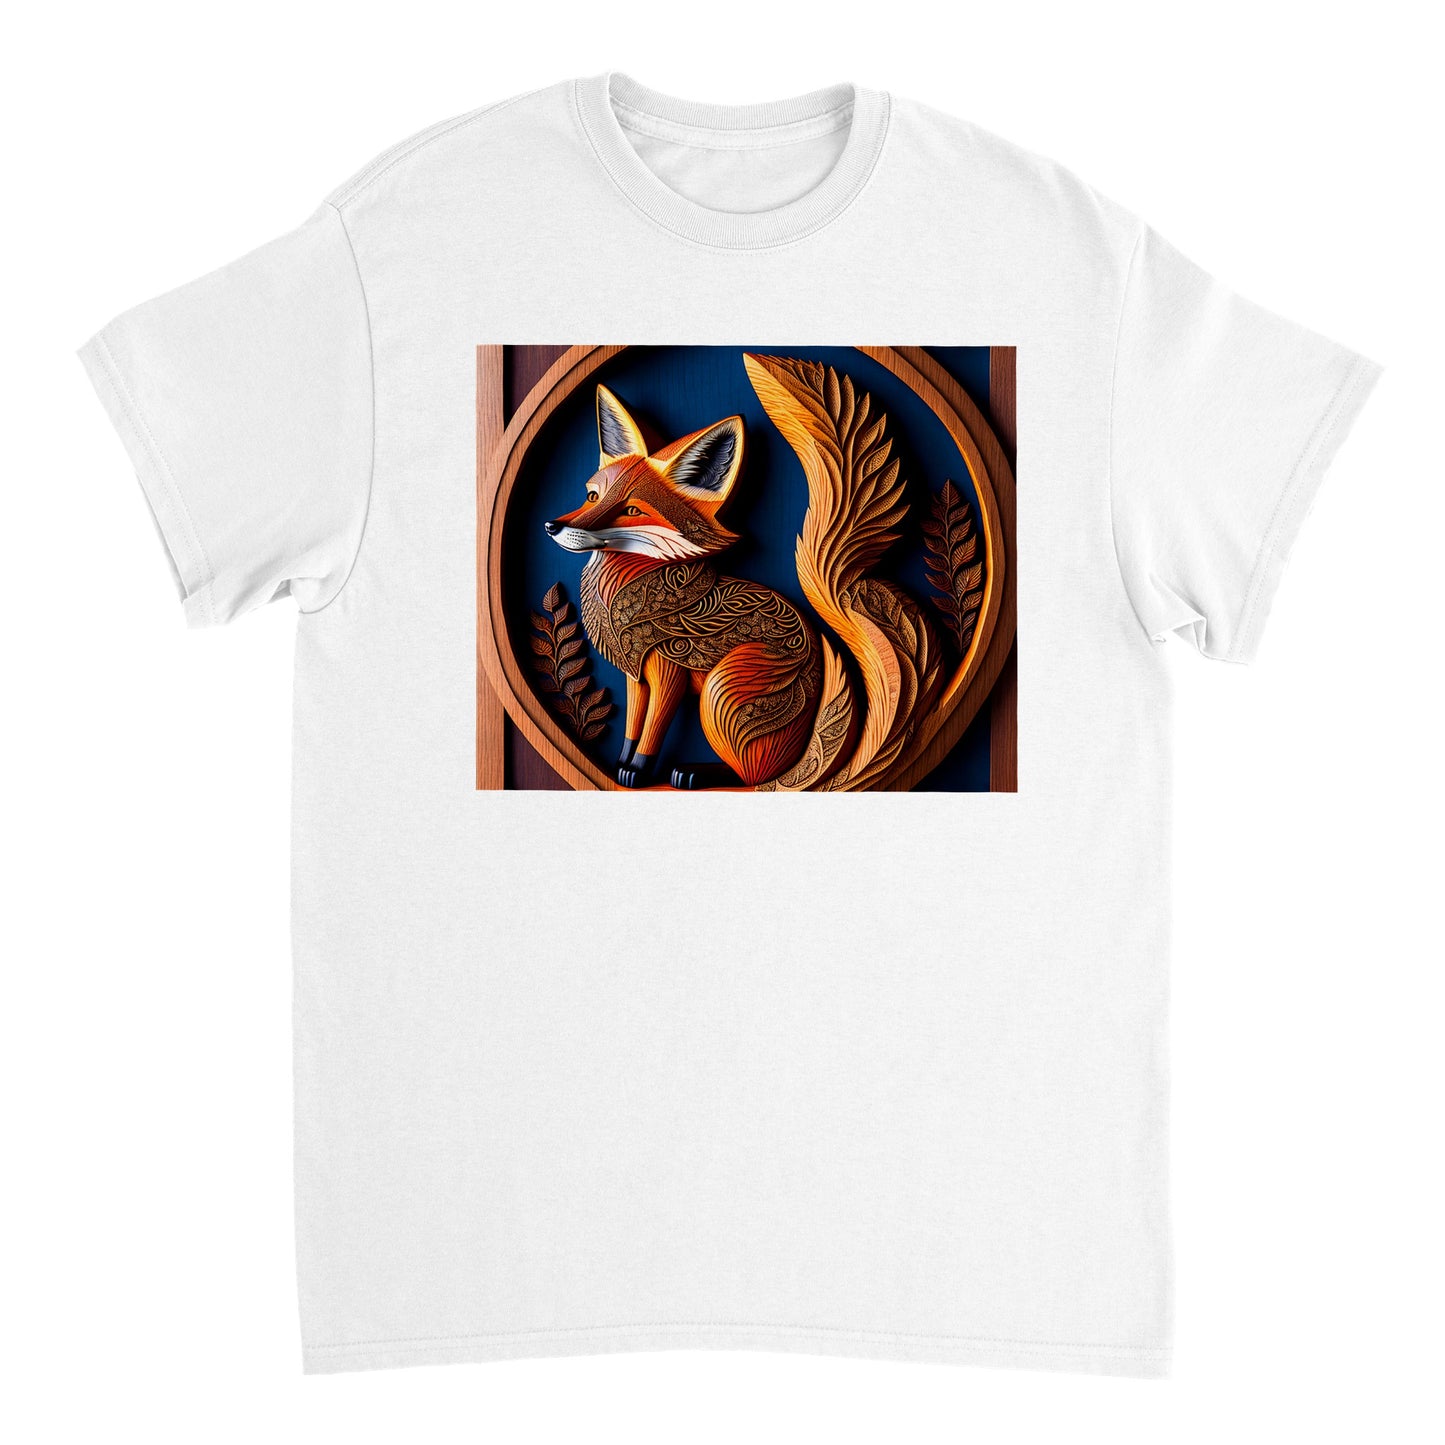 3D Wooden Animal Art - Heavyweight Unisex Crewneck T-shirt 85